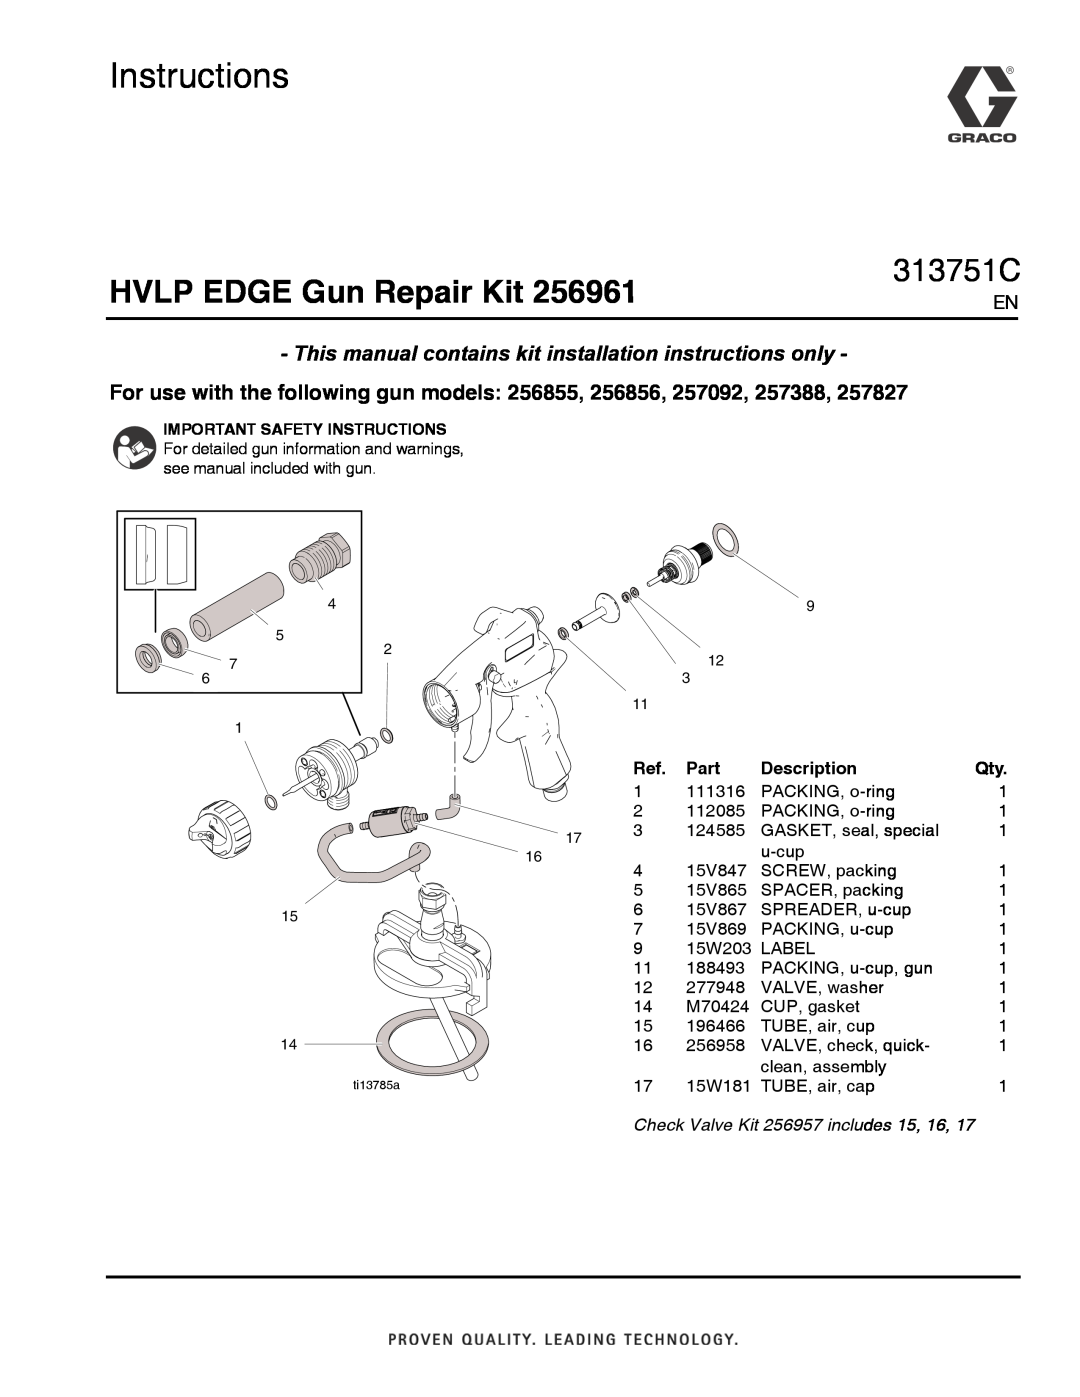 Graco 256961 installation instructions Instructions, HVLP EDGE Gun Repair Kit, 313751C, Part, Description 